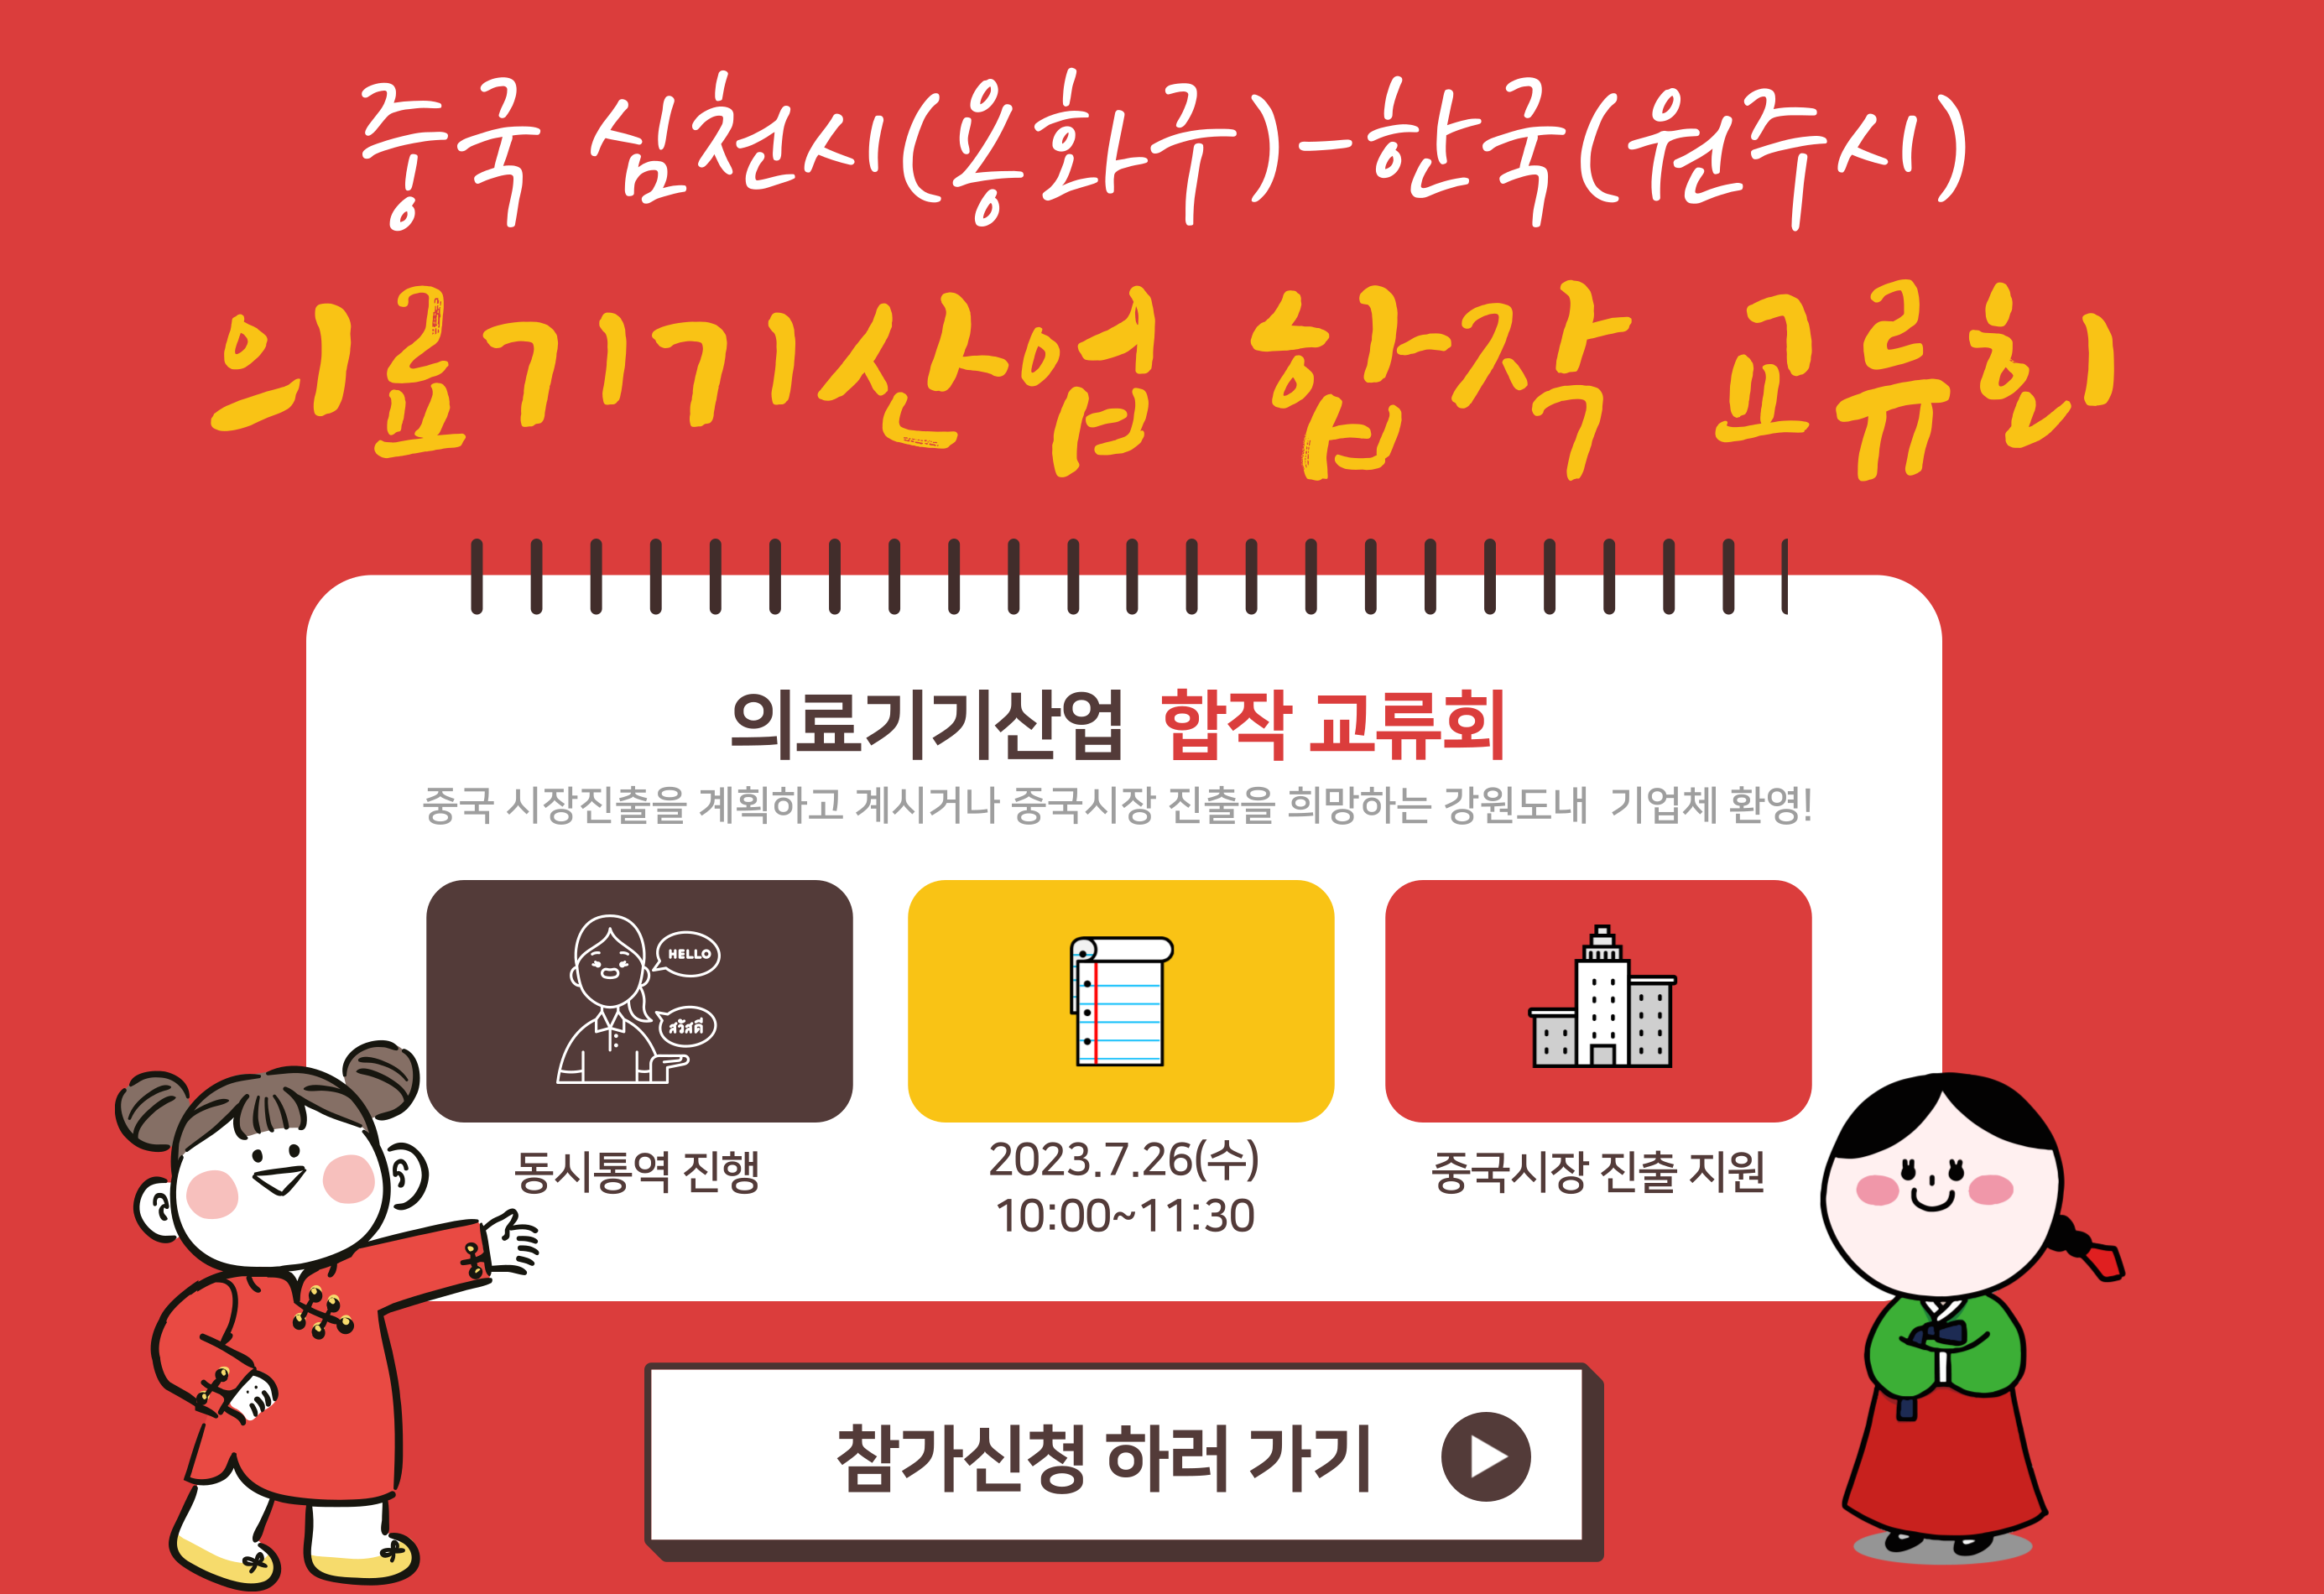 중국 심천시(용화구)-한국(원주) 의료기기산업 합작교류회 개최 안내